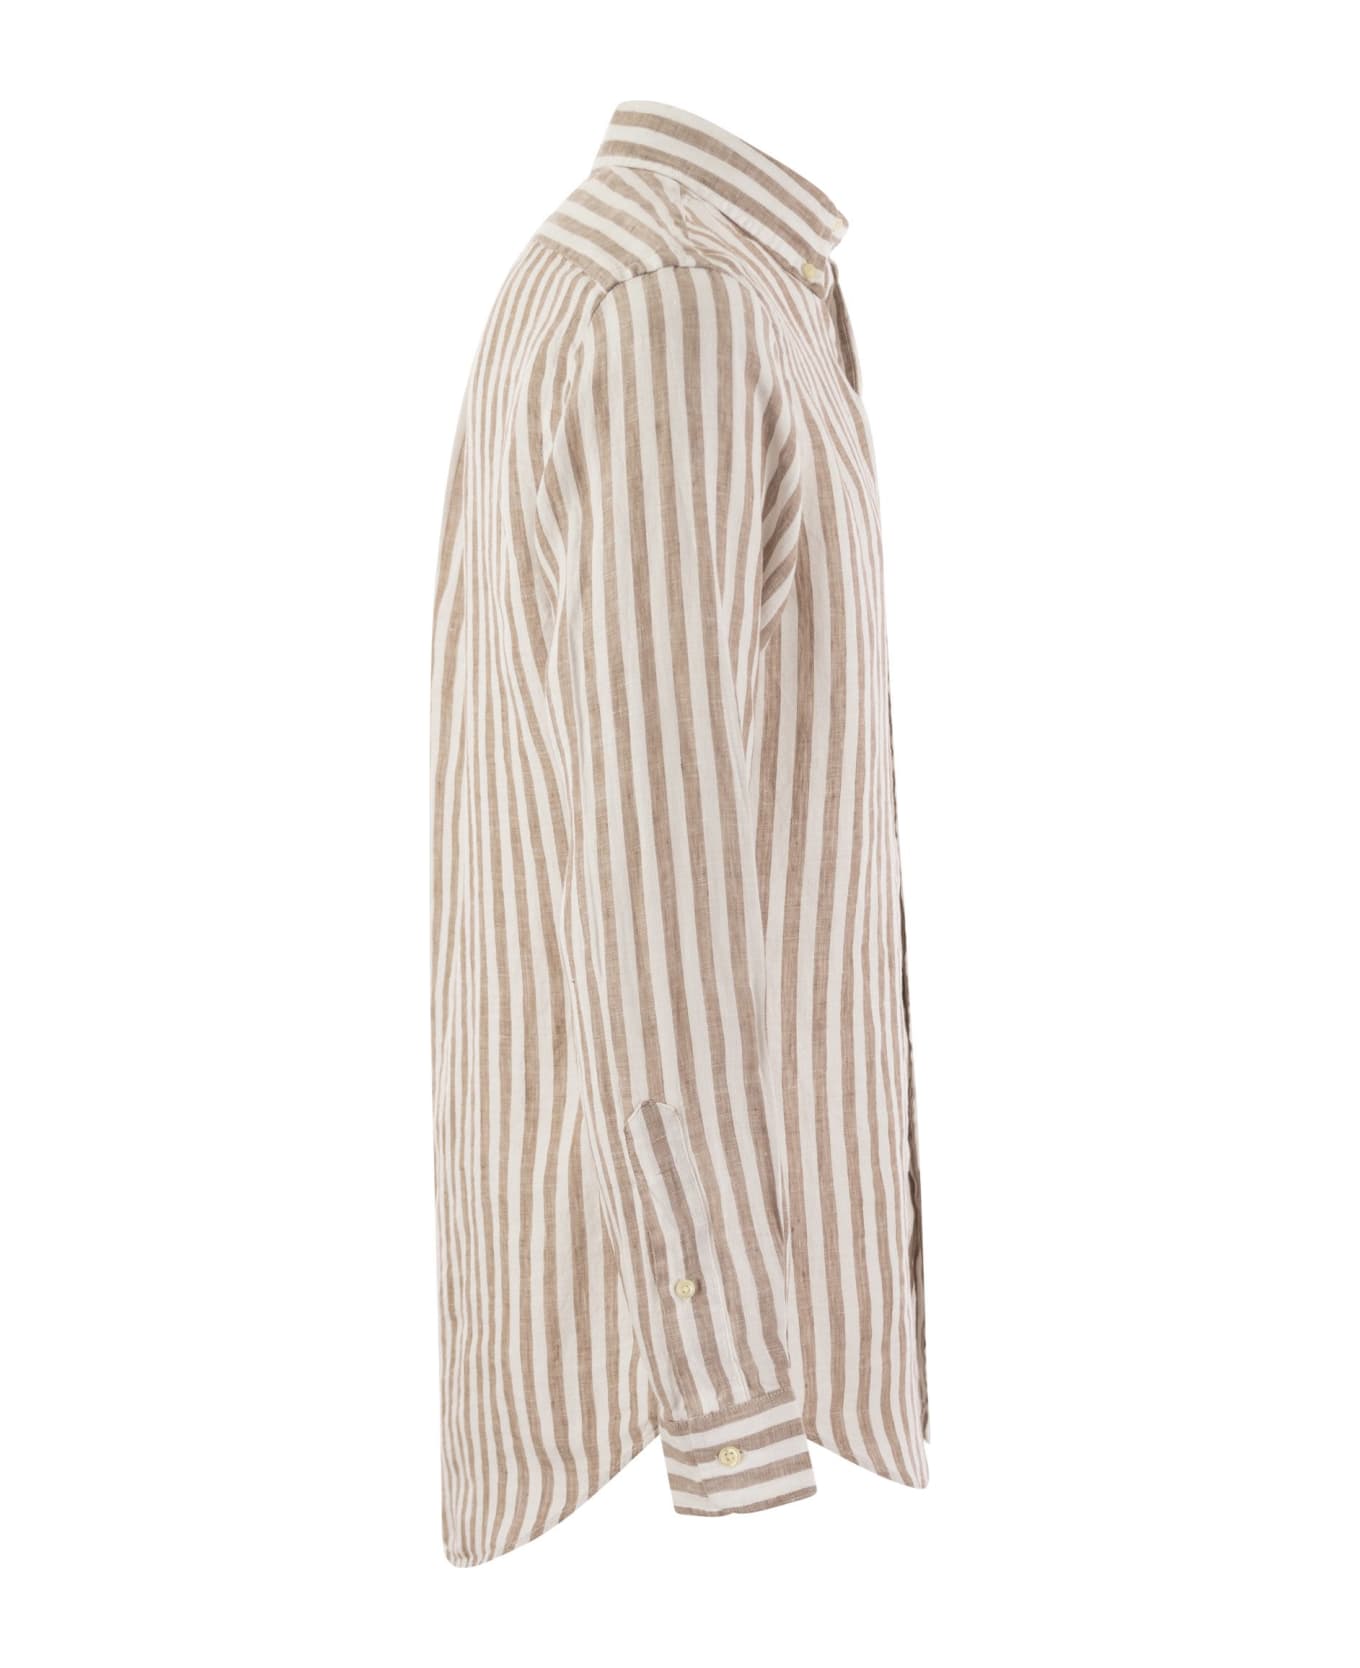 Polo Ralph Lauren Custom-fit Striped Linen Shirt - Kaki/white